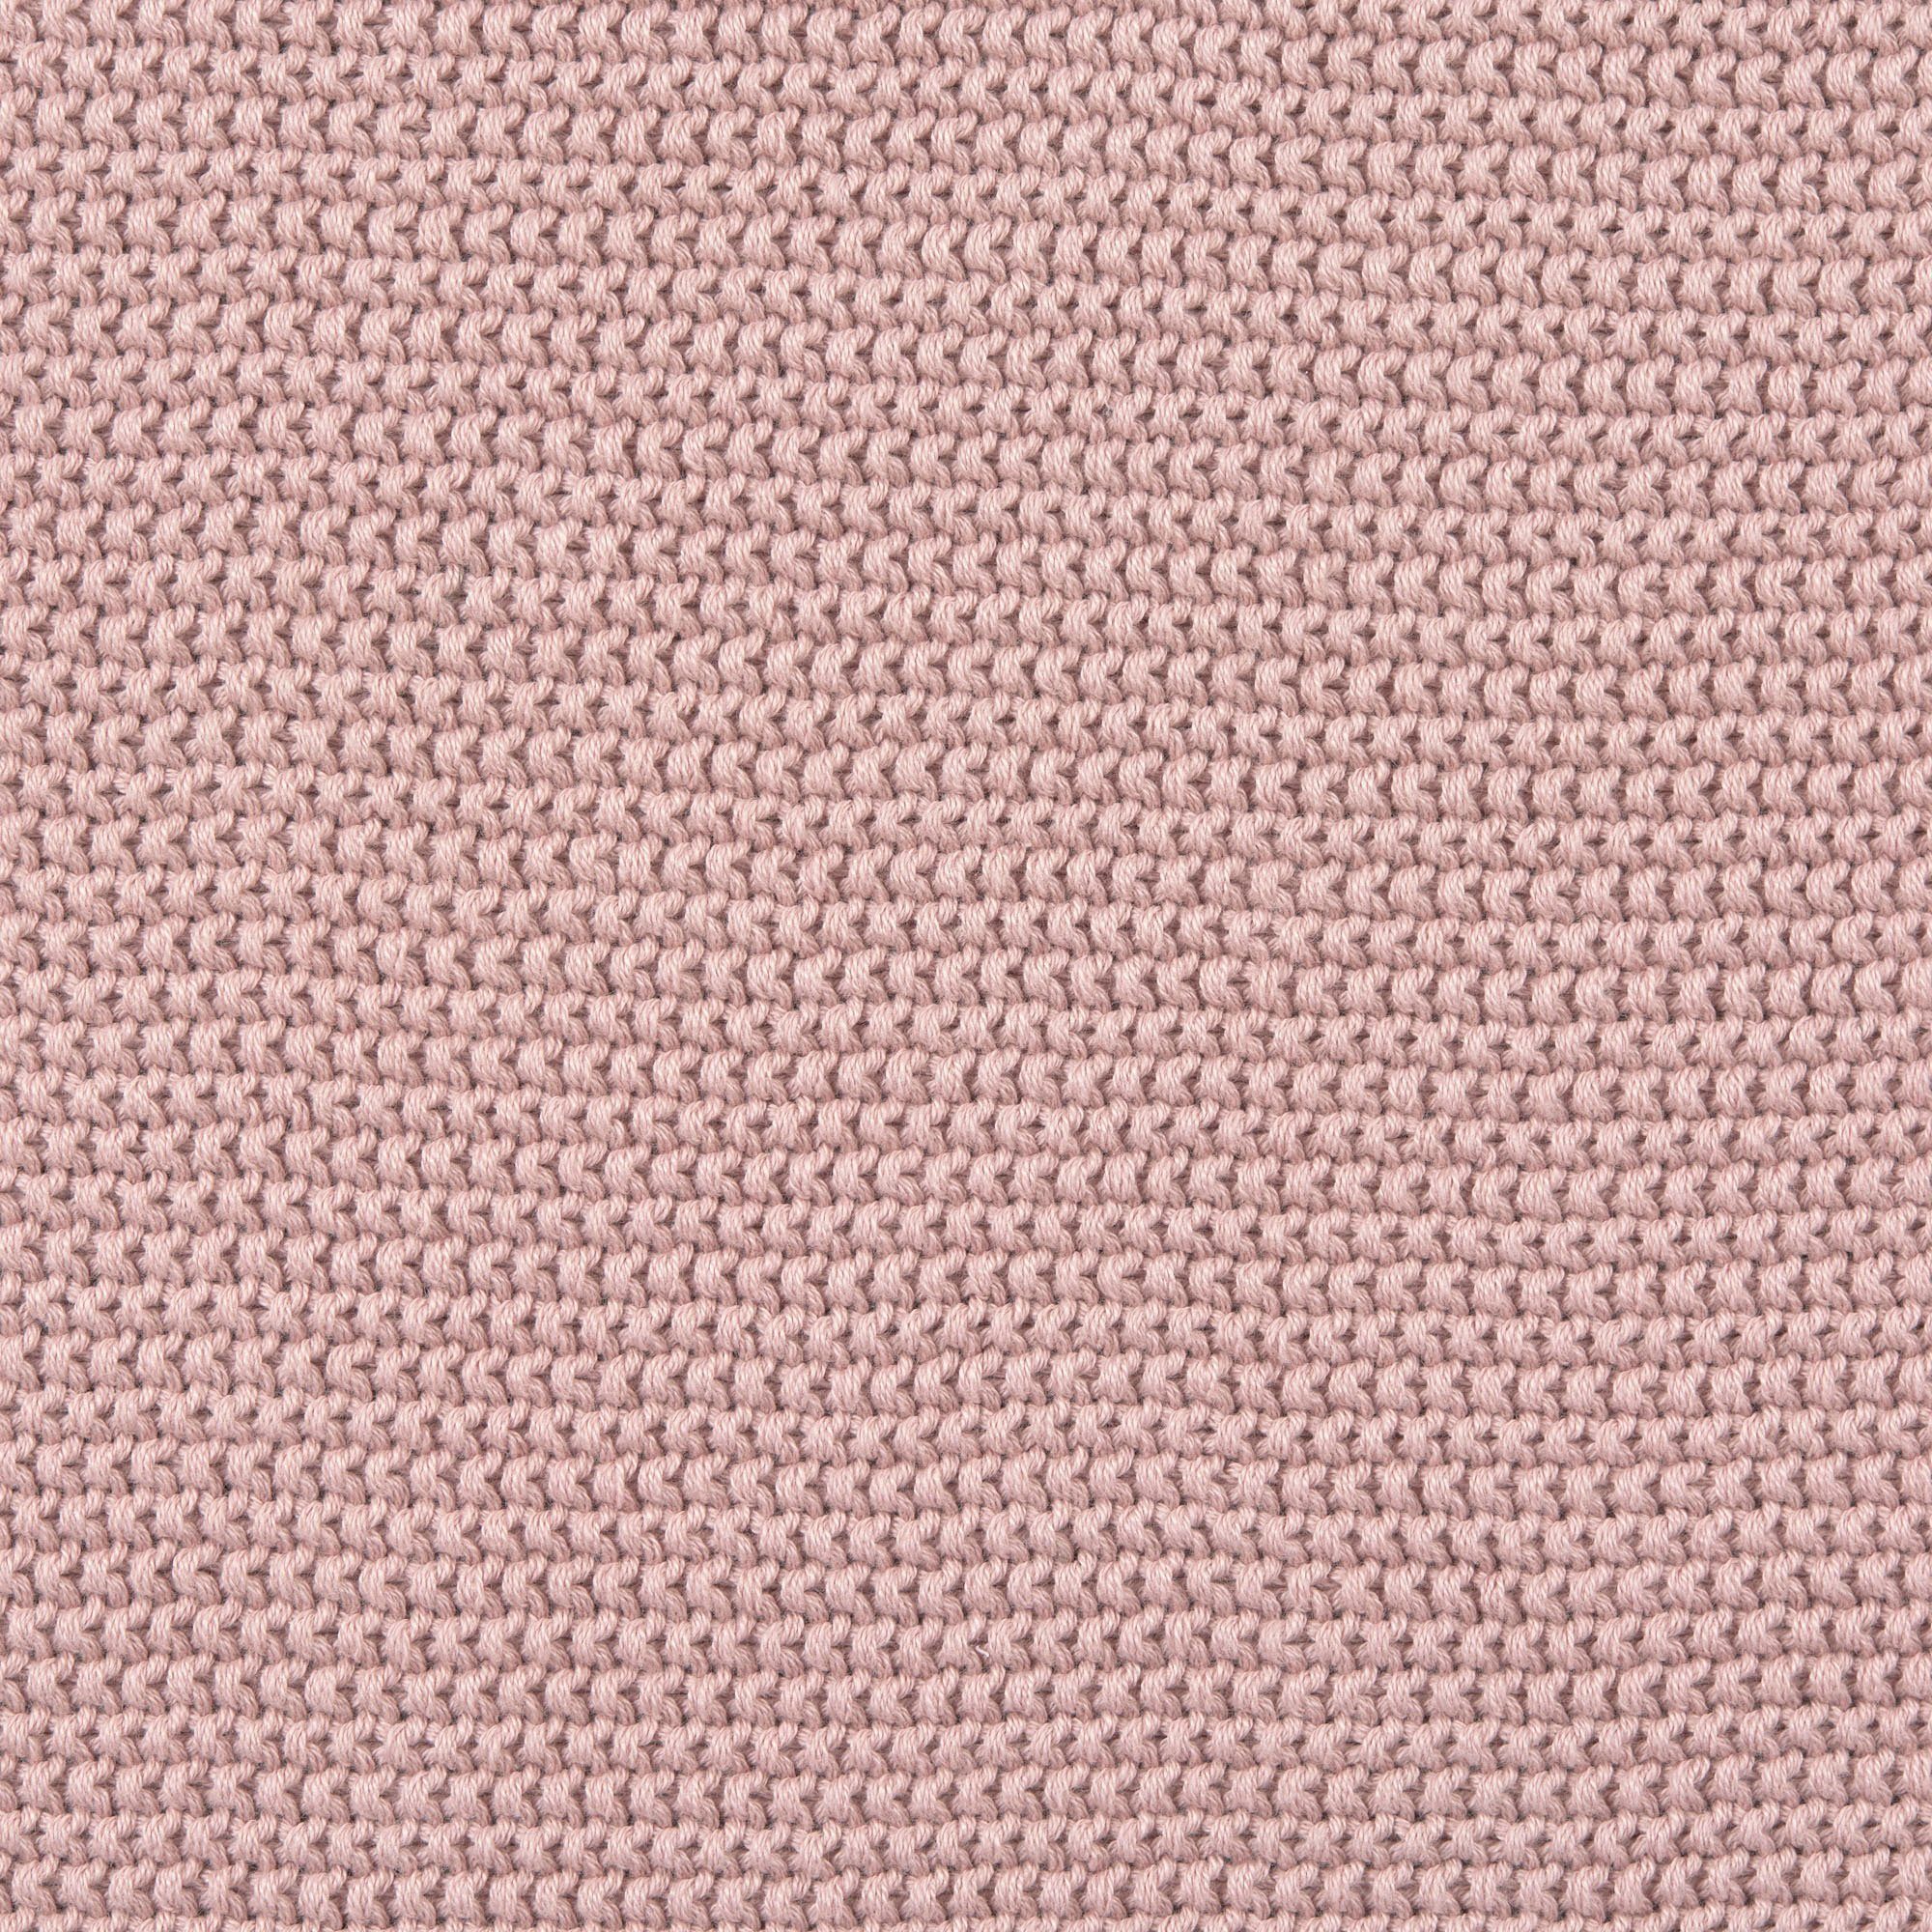 Einschlagdecke Einschlagdecke für Babyschale, dusty organic pink, BCS zertifiziert 27262 LÄSSIG, with durch GOTS materials, made